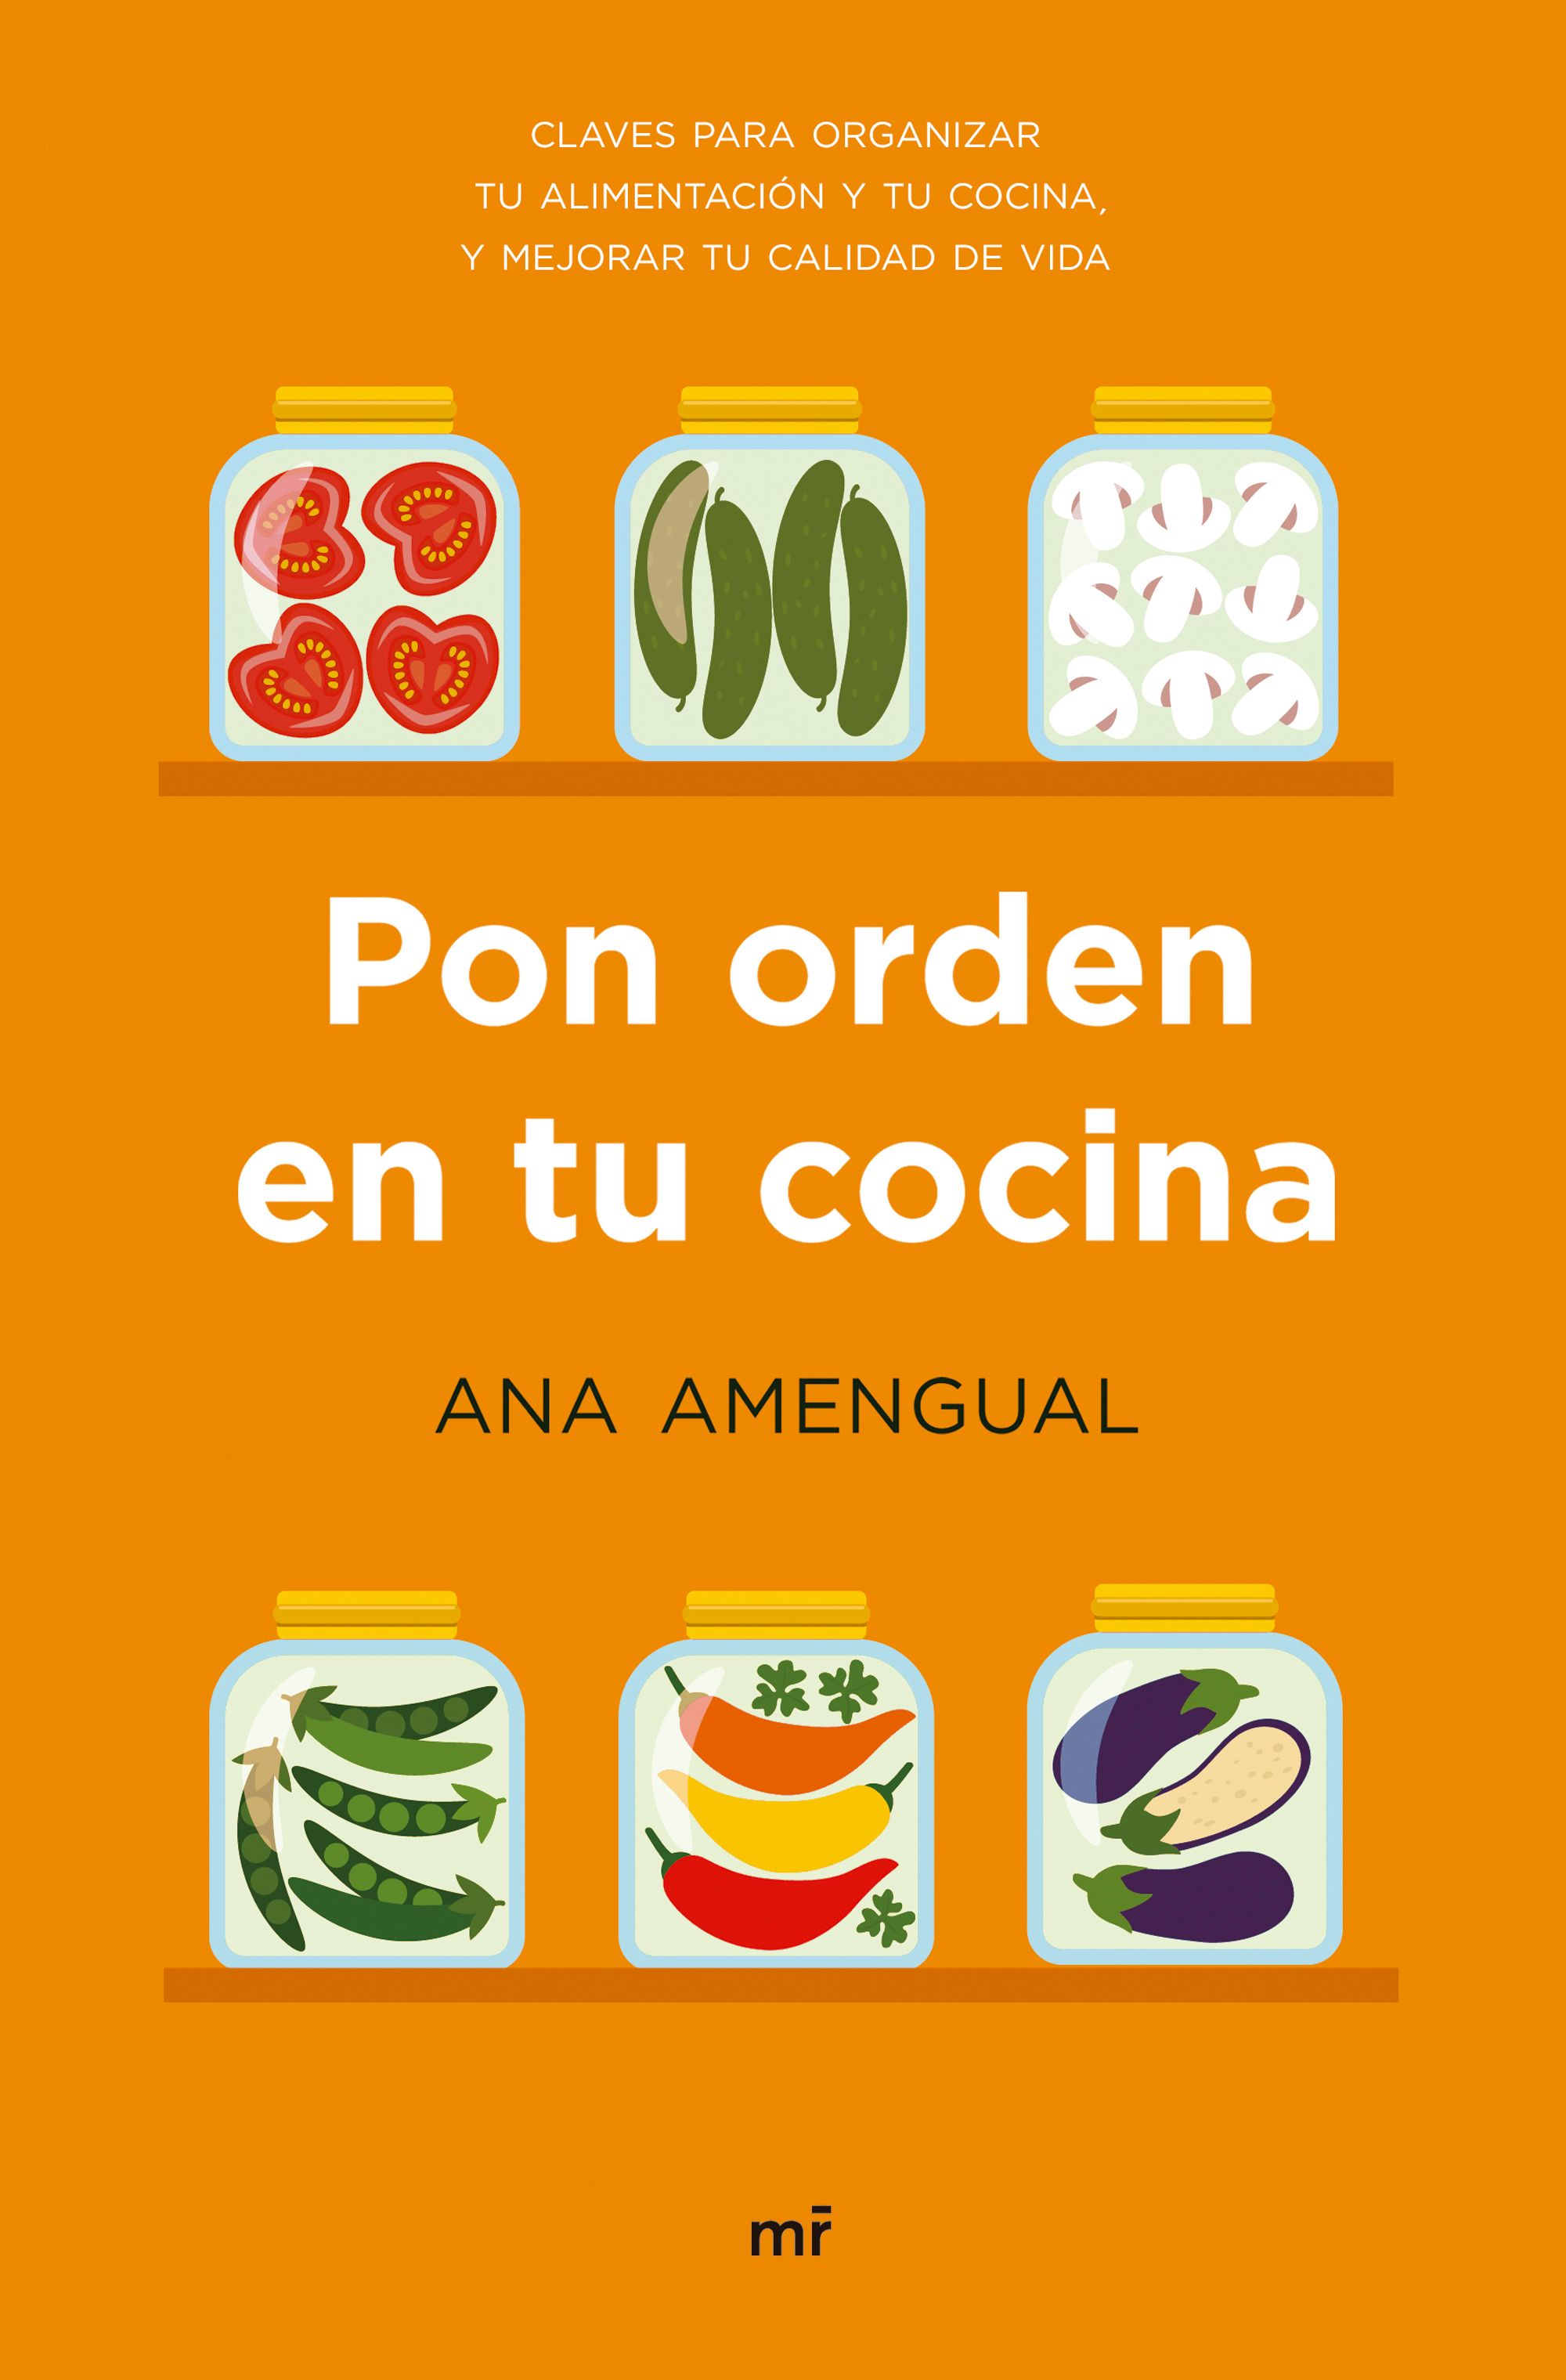 La dietista Ana Amengual dice que para adelgazar primero “hay que poner orden en la cocina”